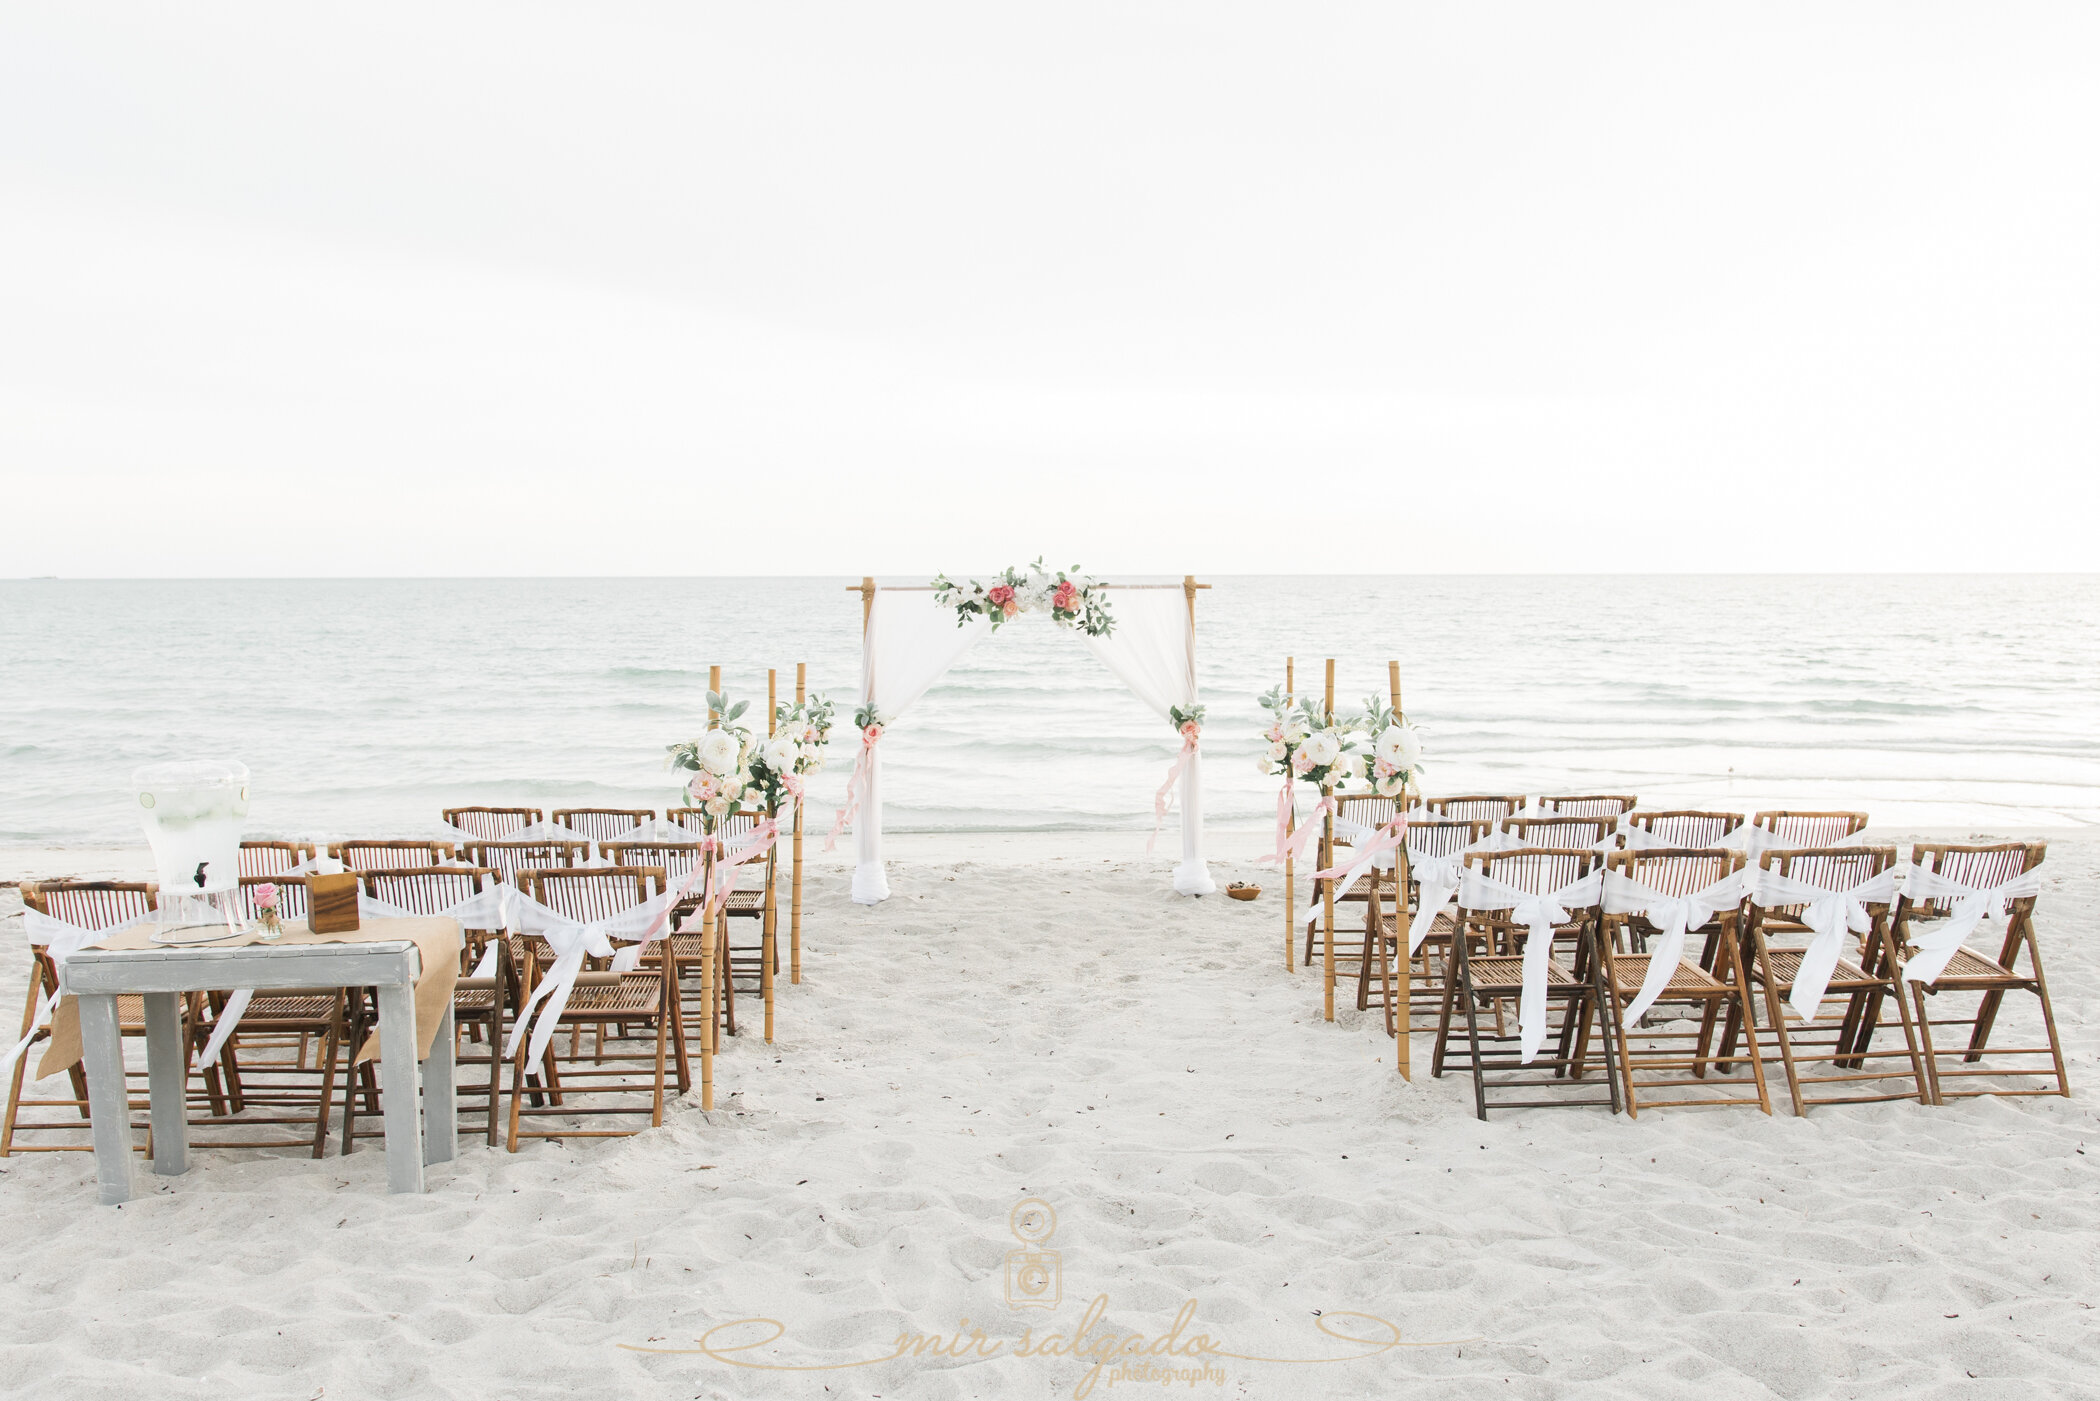 wedding-arch, beach-wedding-arch, beach-wedding-ideas, beach-wedding-decoration, beach-wedding-venue